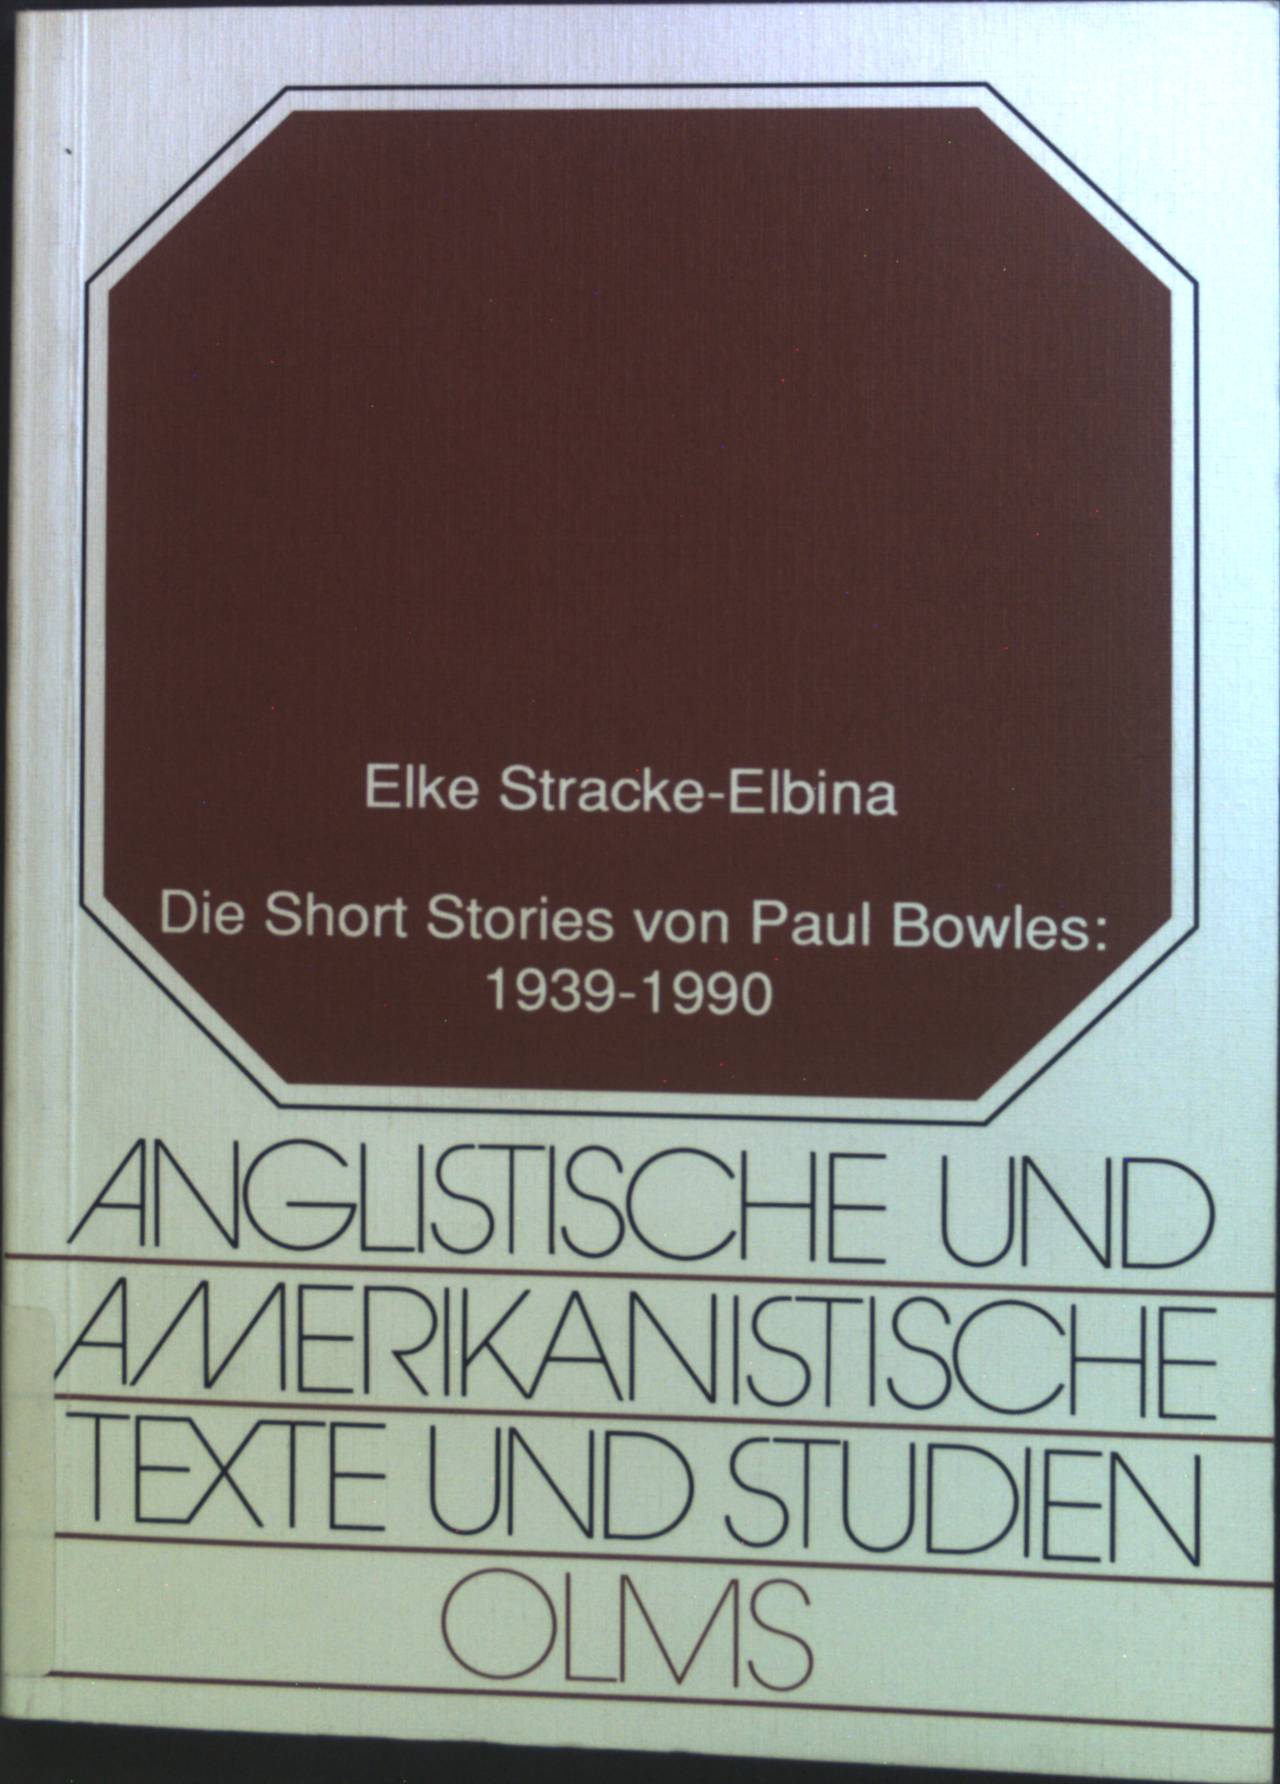 Die short stories von Paul Bowles: 1939 - 1990. Anglistische und amerikanistische Texte und Studien Band 8. - Stracke-Elbina, Elke